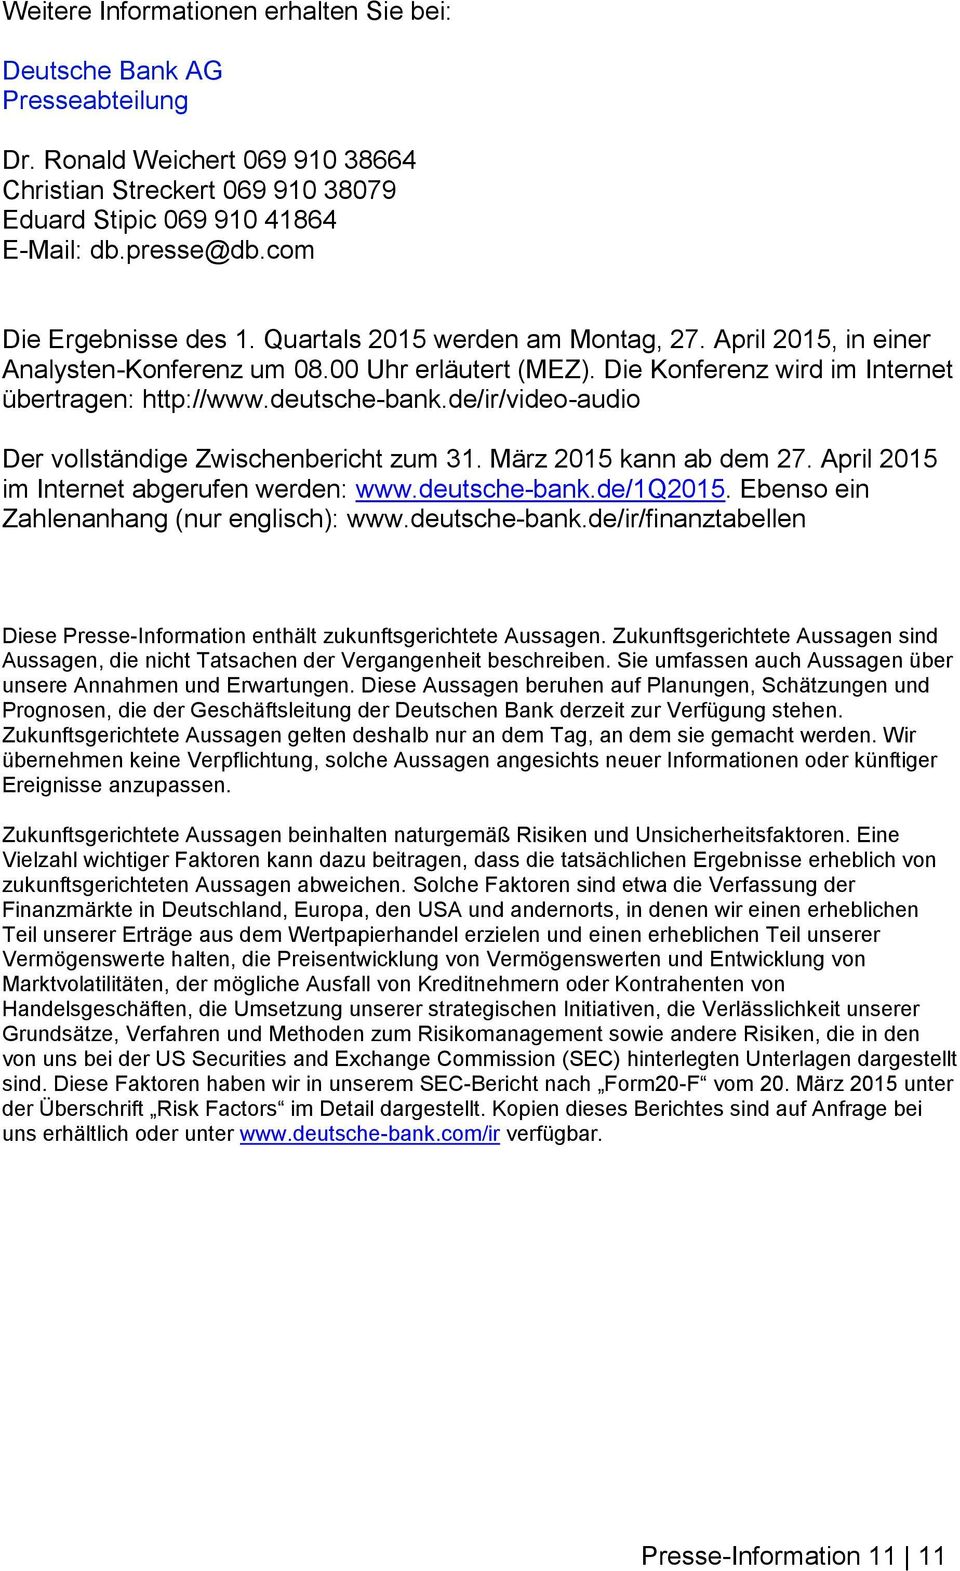 deutsche-bank.de/ir/video-audio Der vollständige Zwischenbericht zum 31. März 2015 kann ab dem 27. April 2015 im Internet abgerufen werden: www.deutsche-bank.de/1q2015.